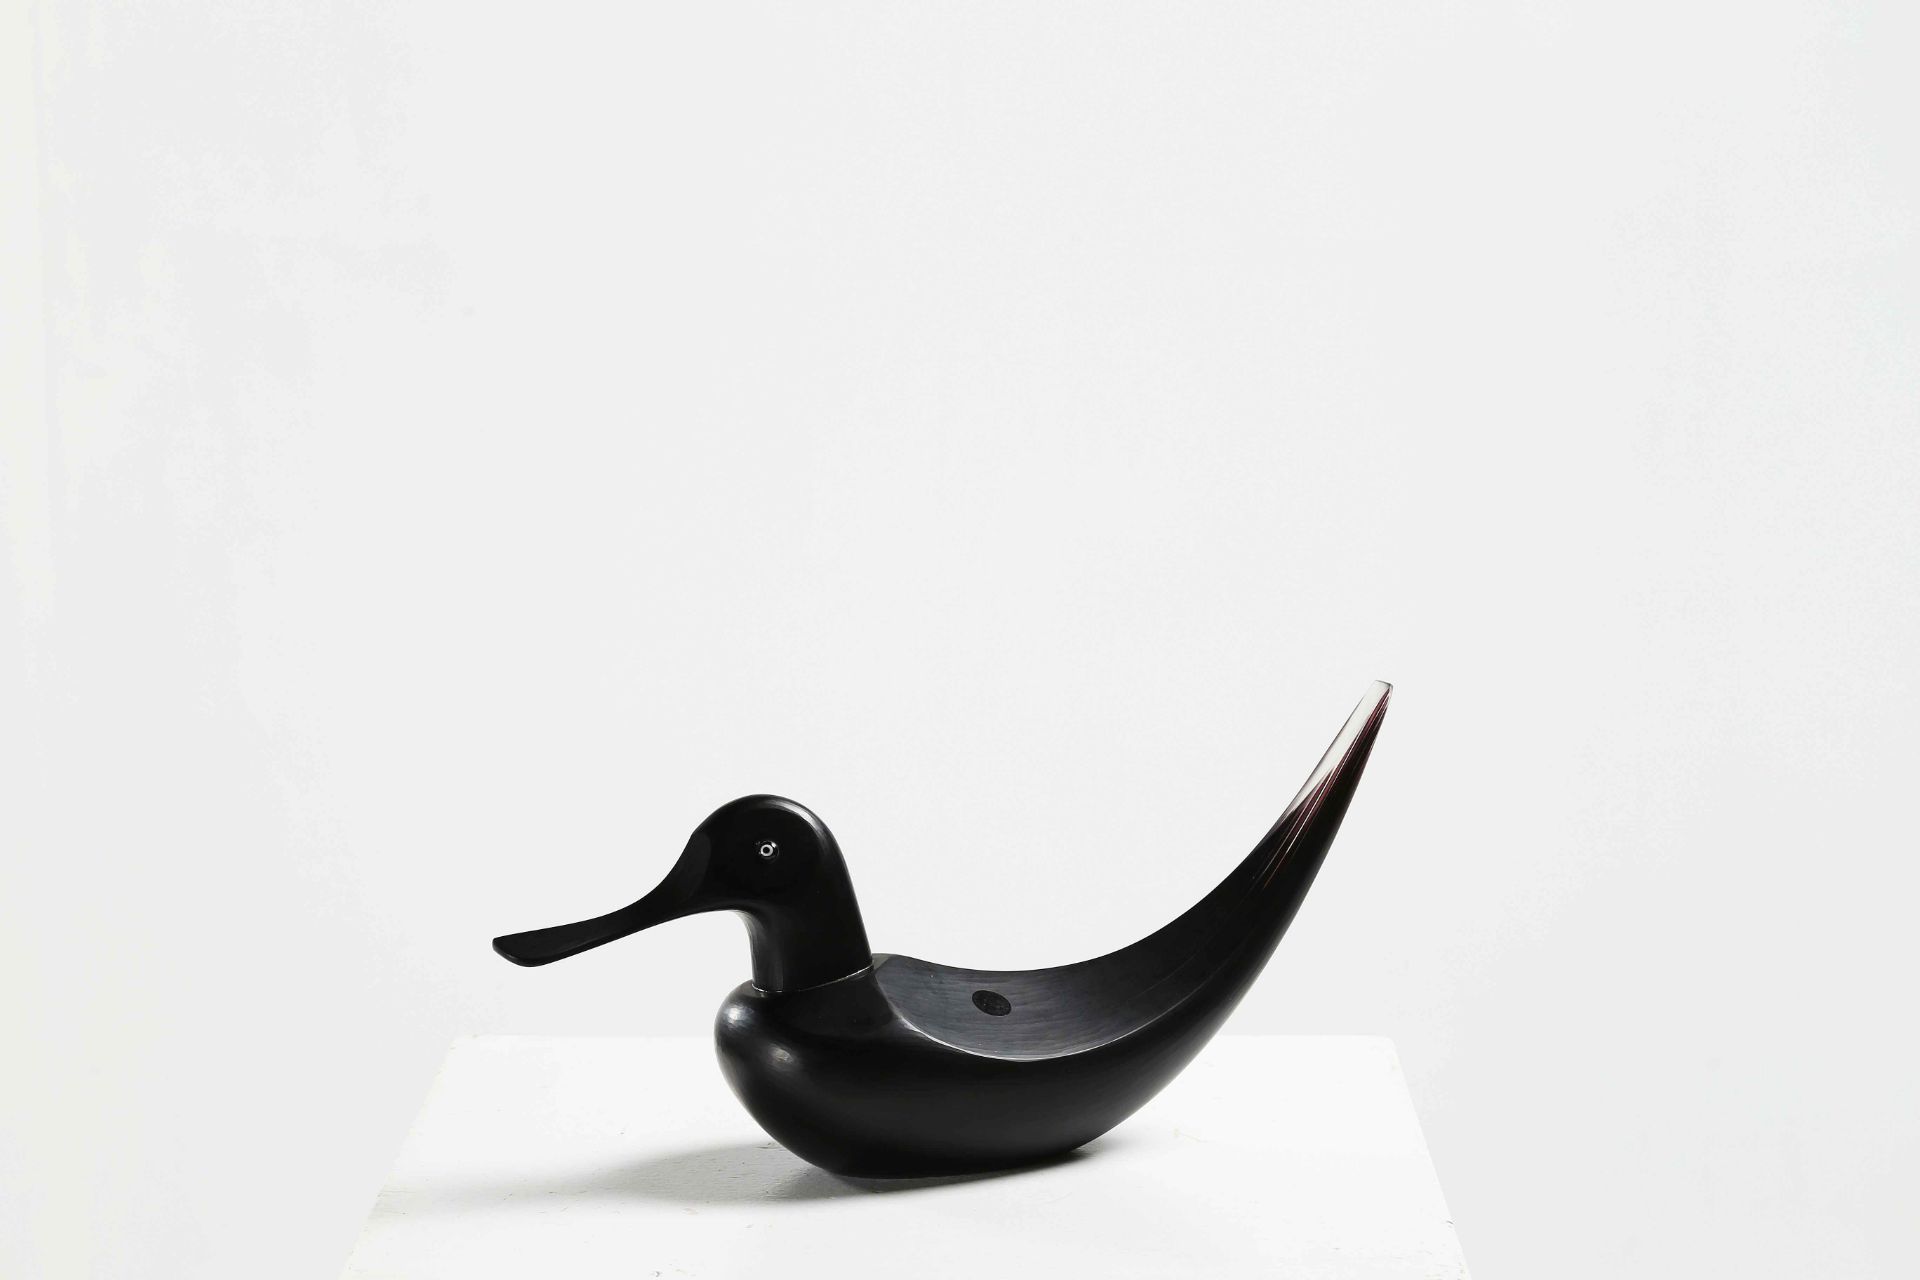 ZUCCHERI TONI (1937 - 2008)
For Venini. Widgeon black Venini TZ 1989/27.
Solid incised glass. Murano